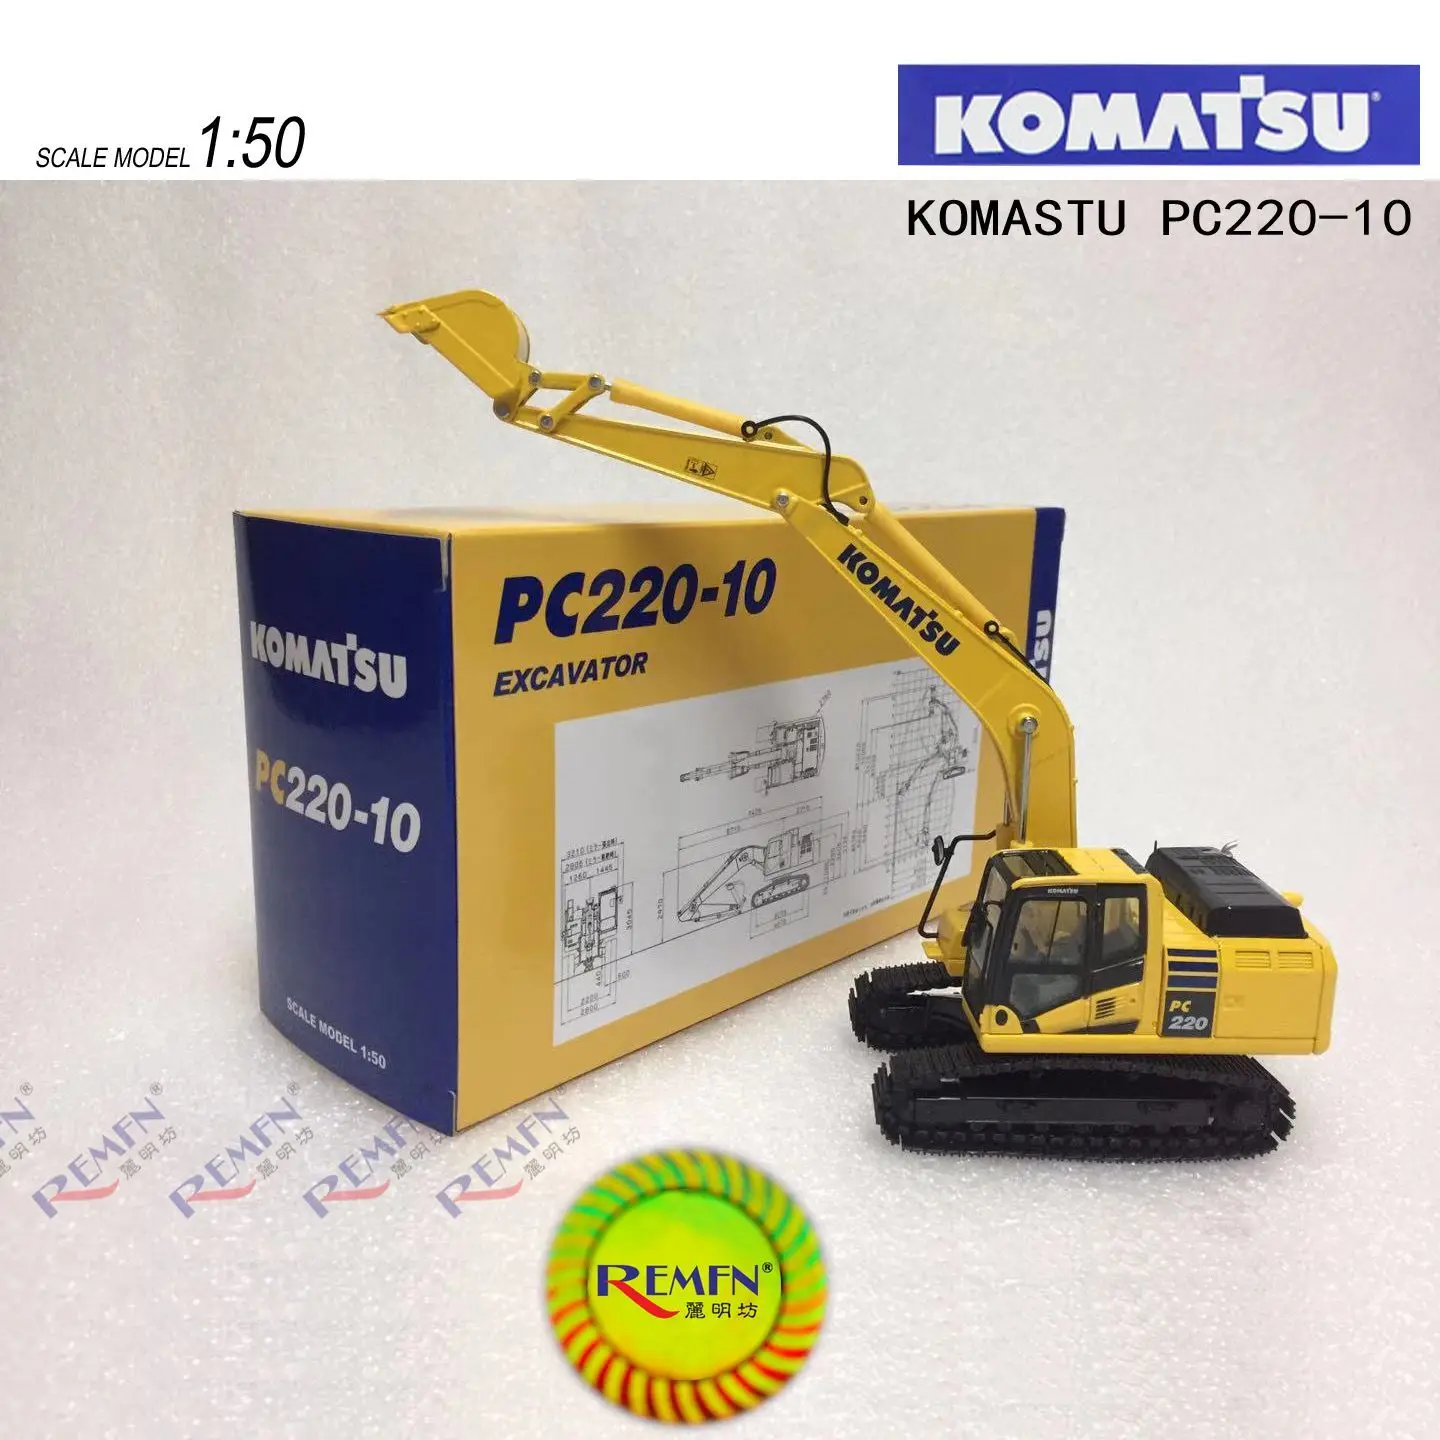 PC220-10 Excavator 1/50 Scale DieCast Model New in Original Box